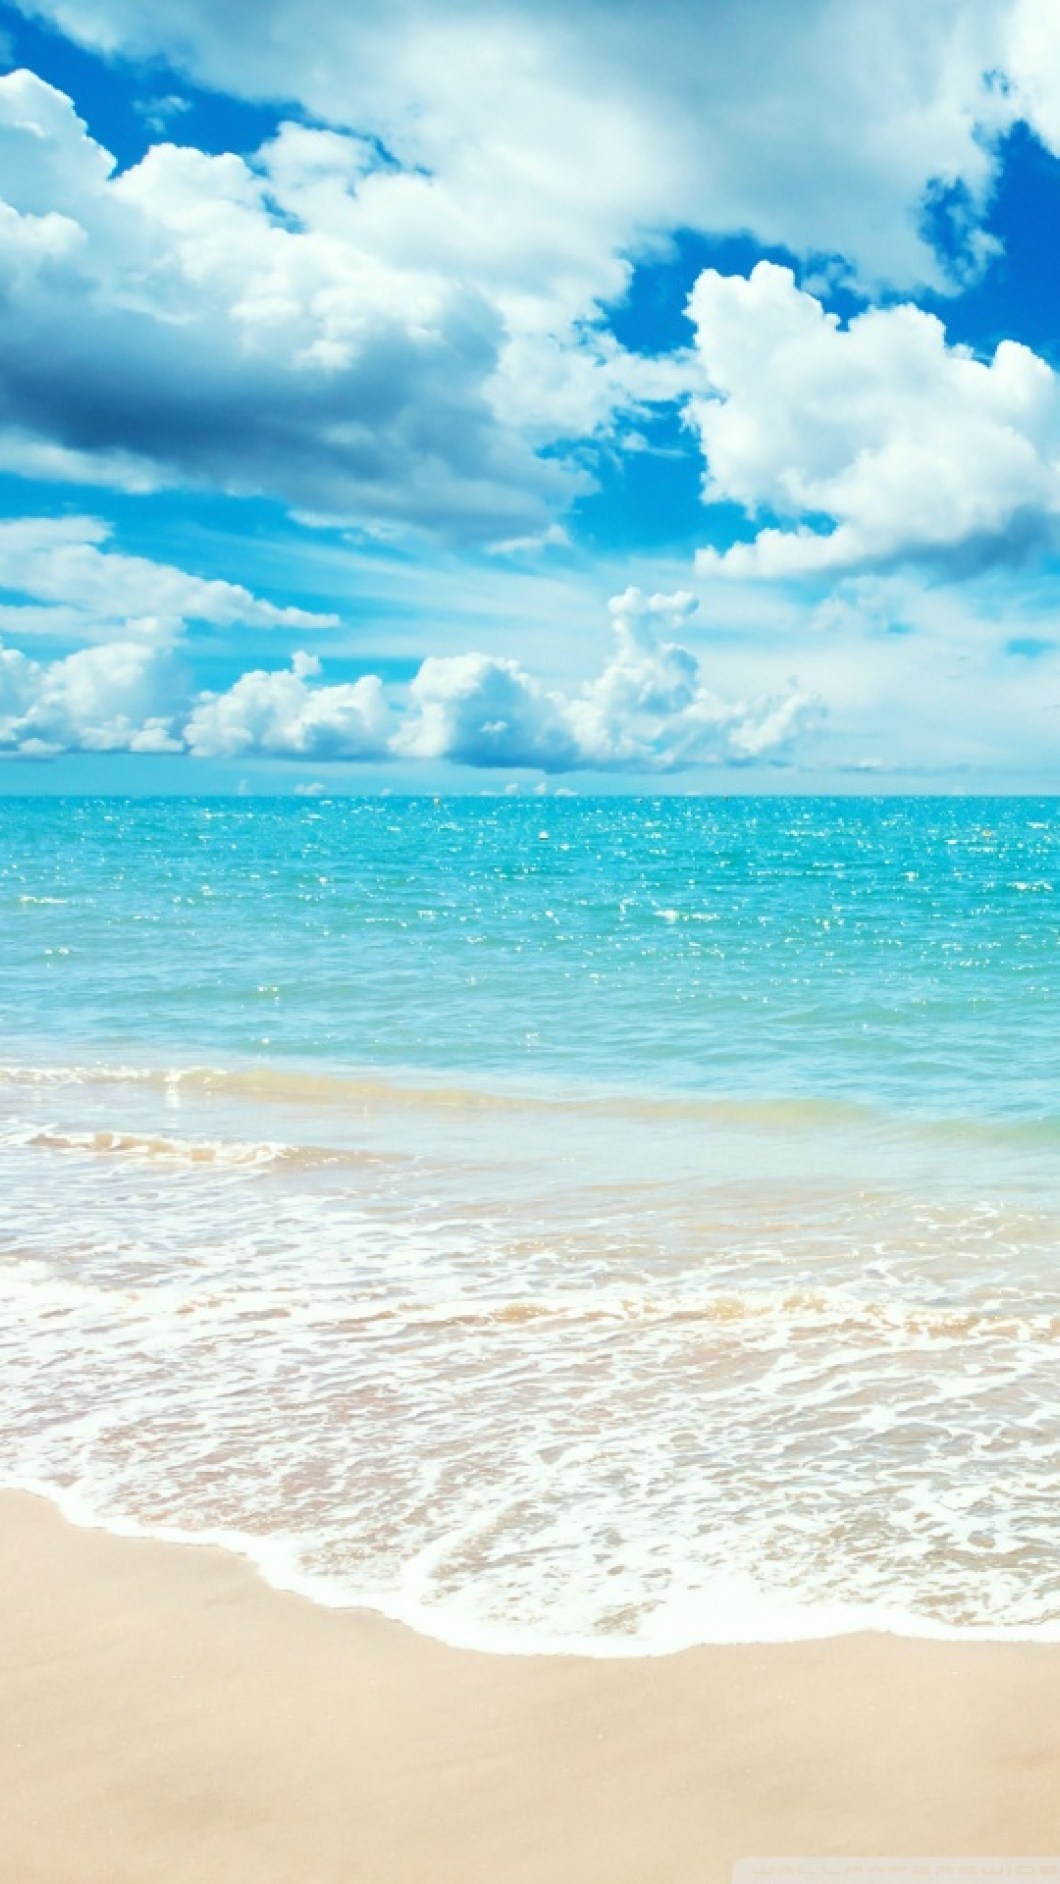 Iphone Beach Wallpaper Hd - Siesta Key Beach , HD Wallpaper & Backgrounds